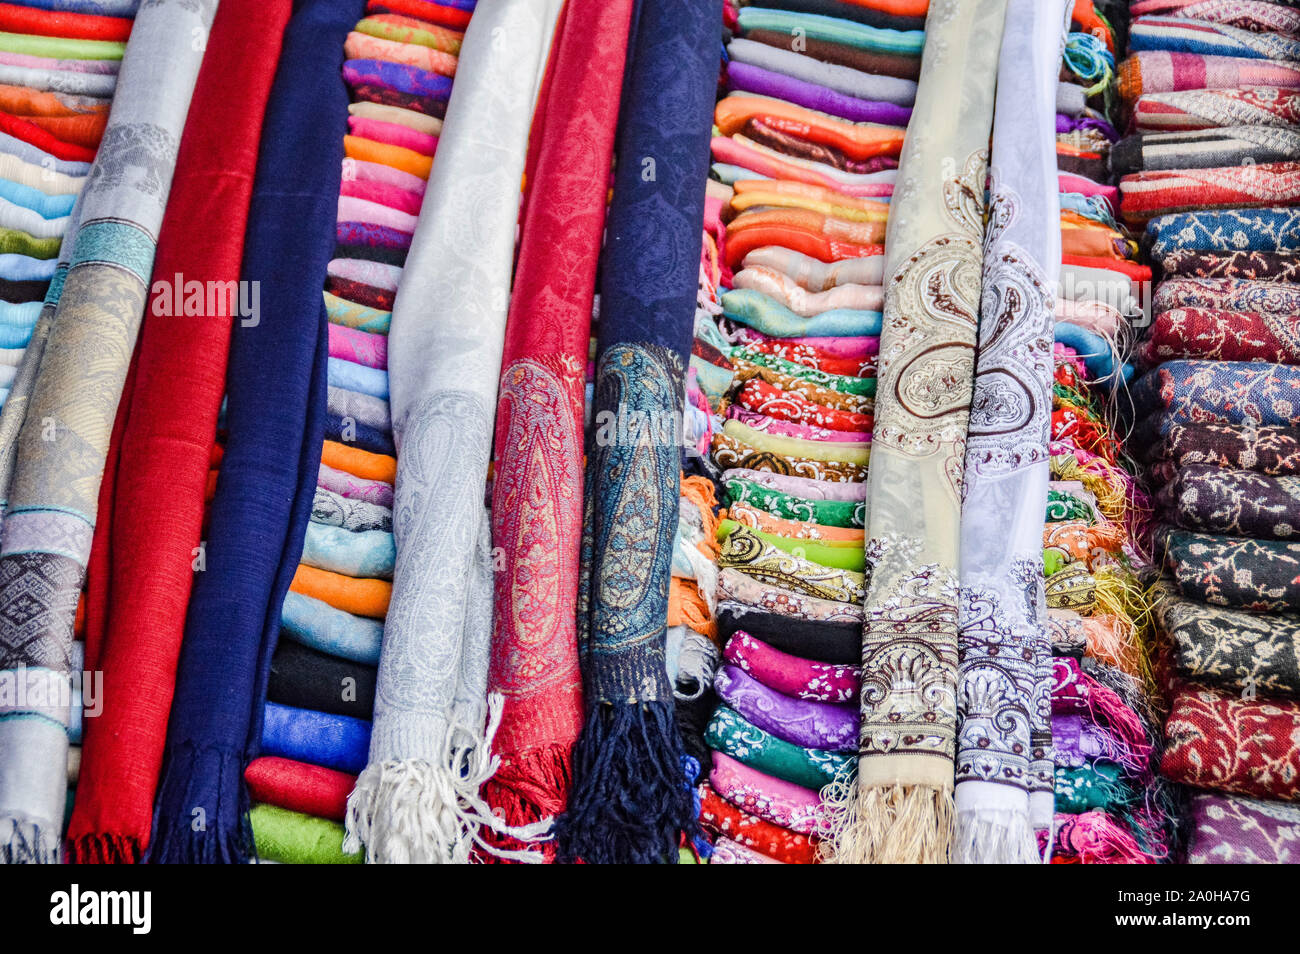 Sedas lao tejidas a mano tradicionales vendidas como recuerdos turísticos populares en los mercados callejeros de Luang Prabang, Laos Foto de stock